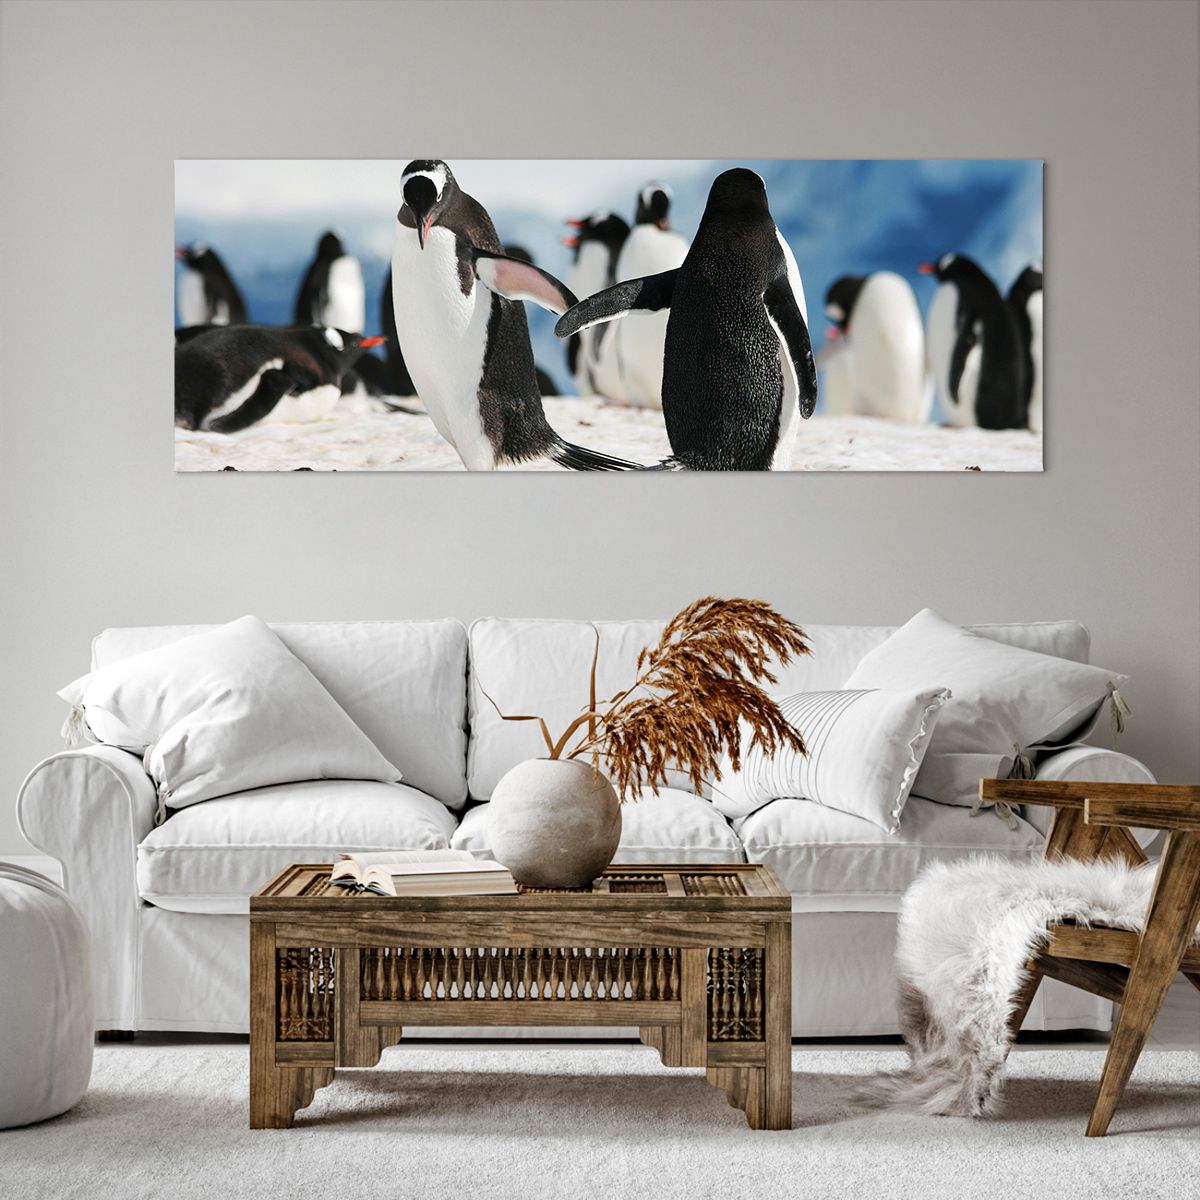 Obrazy na płótnie Pingwin, Obrazy na płótnie Antarktyda, Obrazy na płótnie Krajobraz, Obrazy na płótnie Śnieg, Obrazy na płótnie Lód